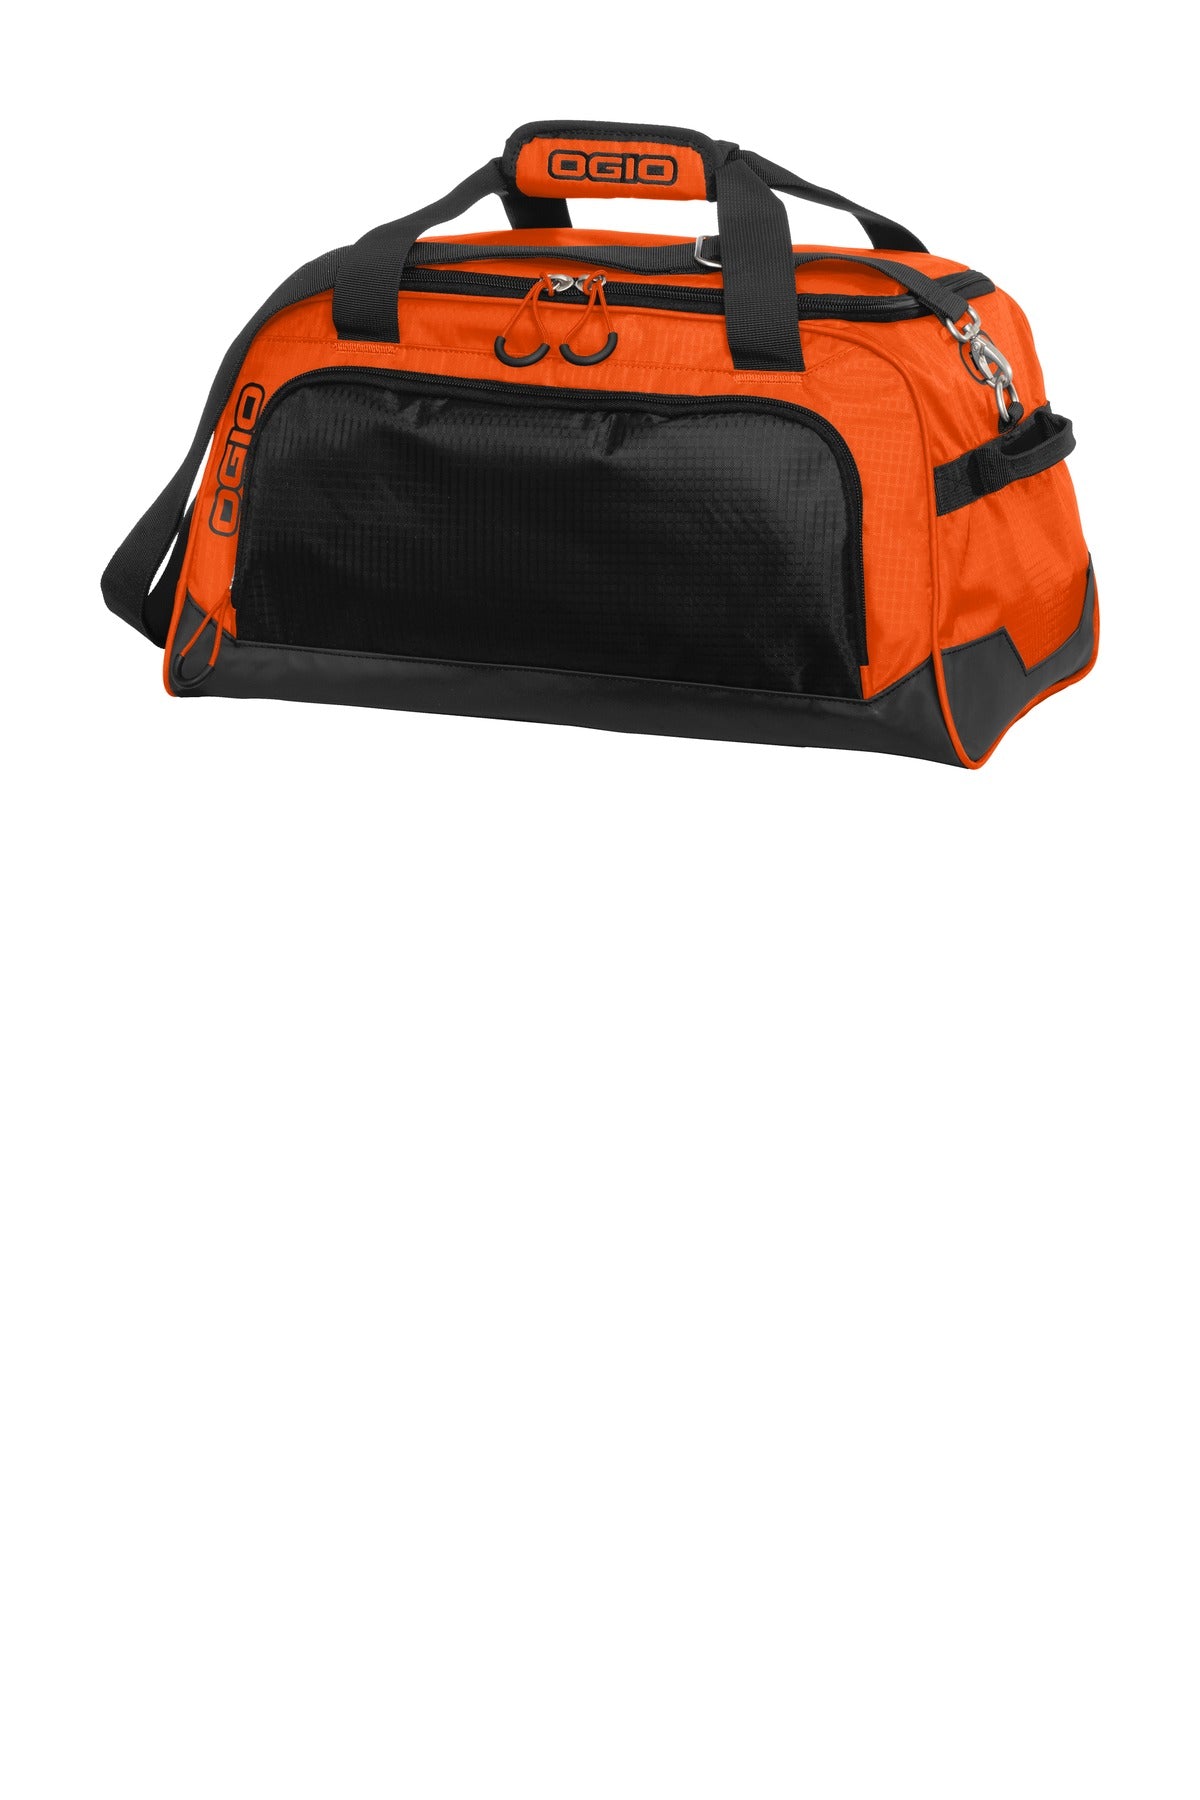 Bags Hot Orange/ Black OSFA OGIO